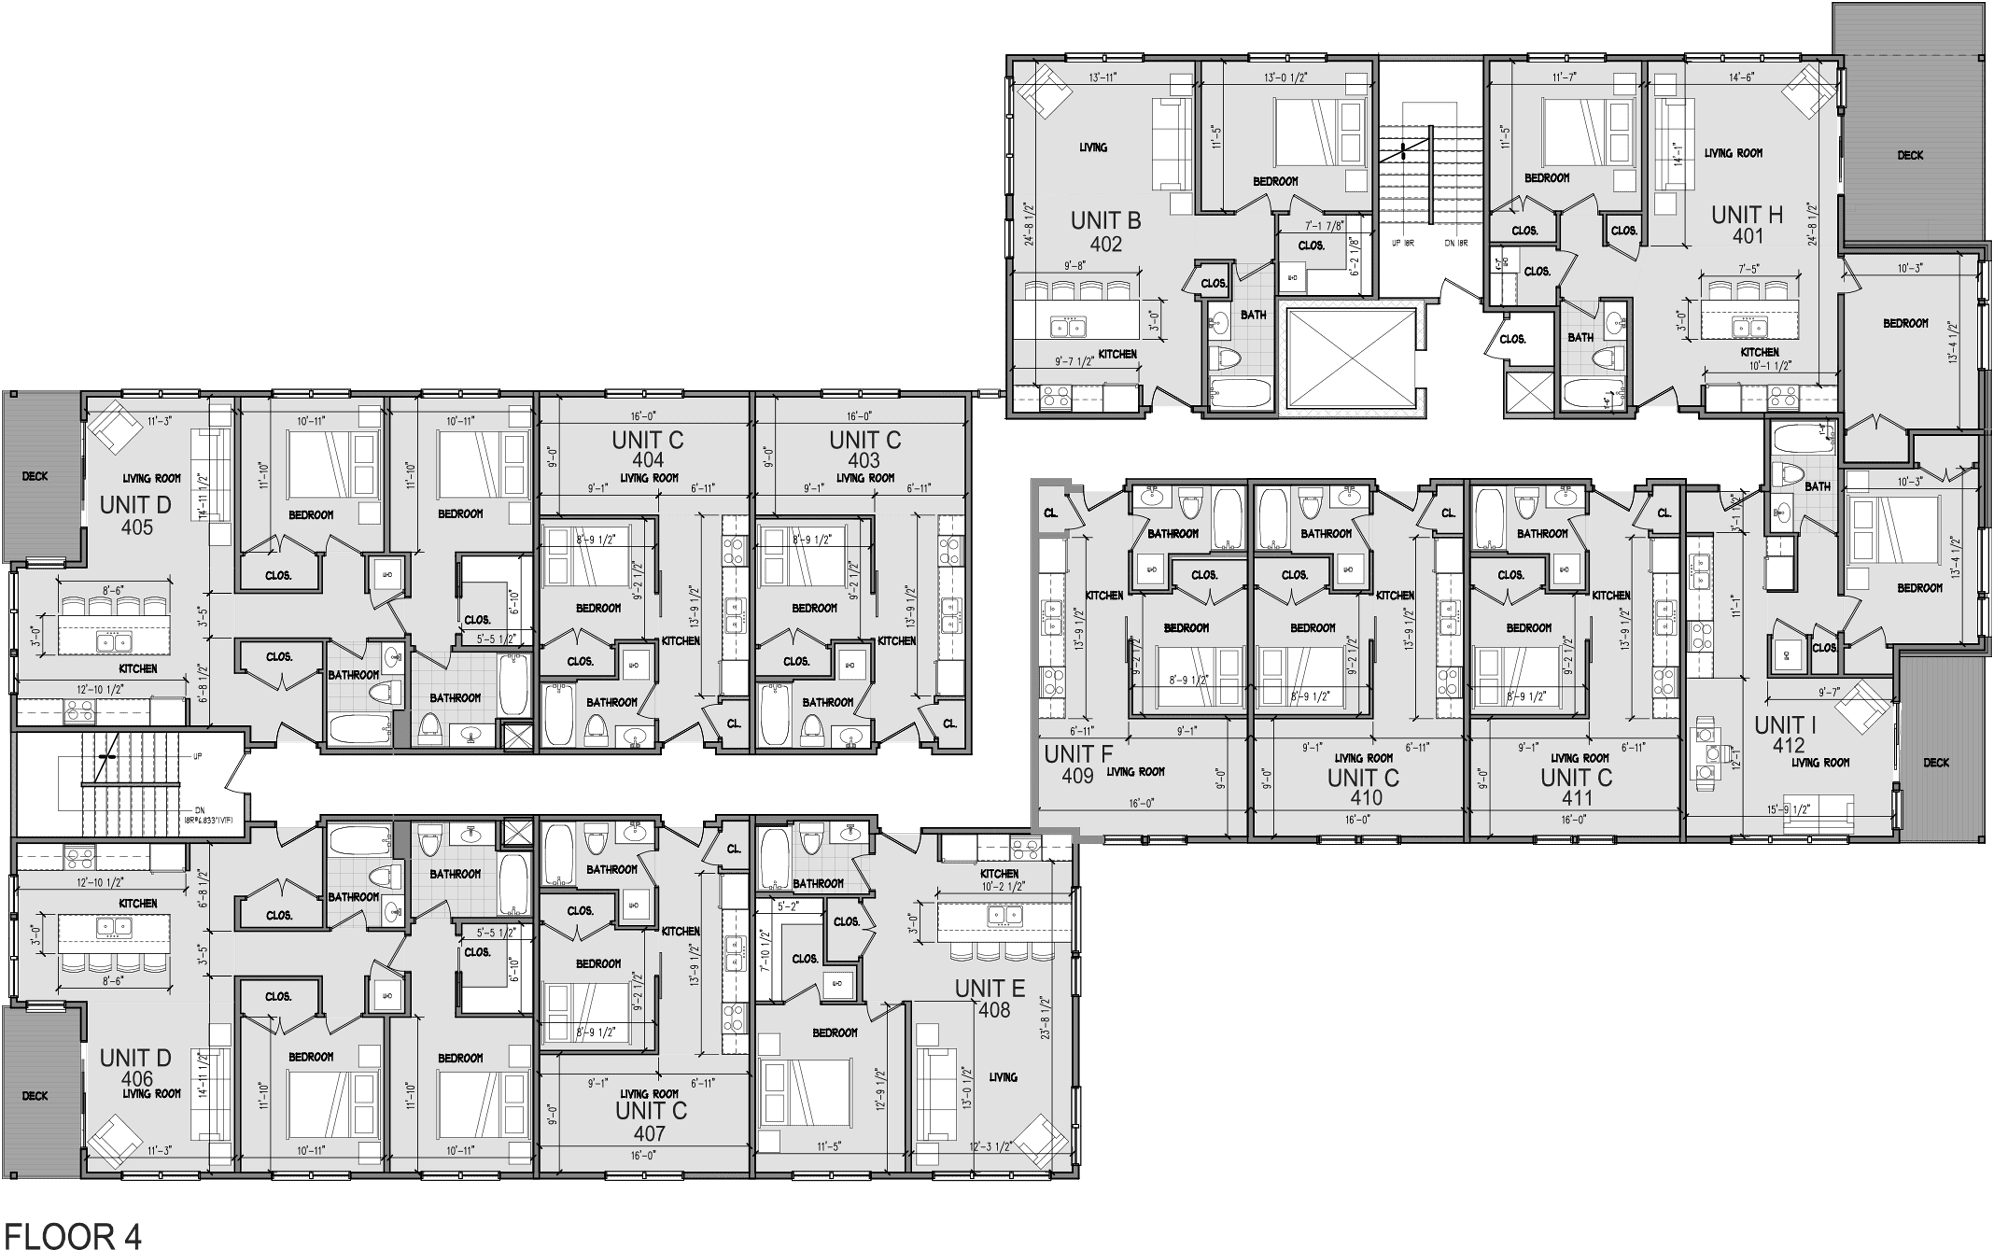 Level 4 Floor Plan